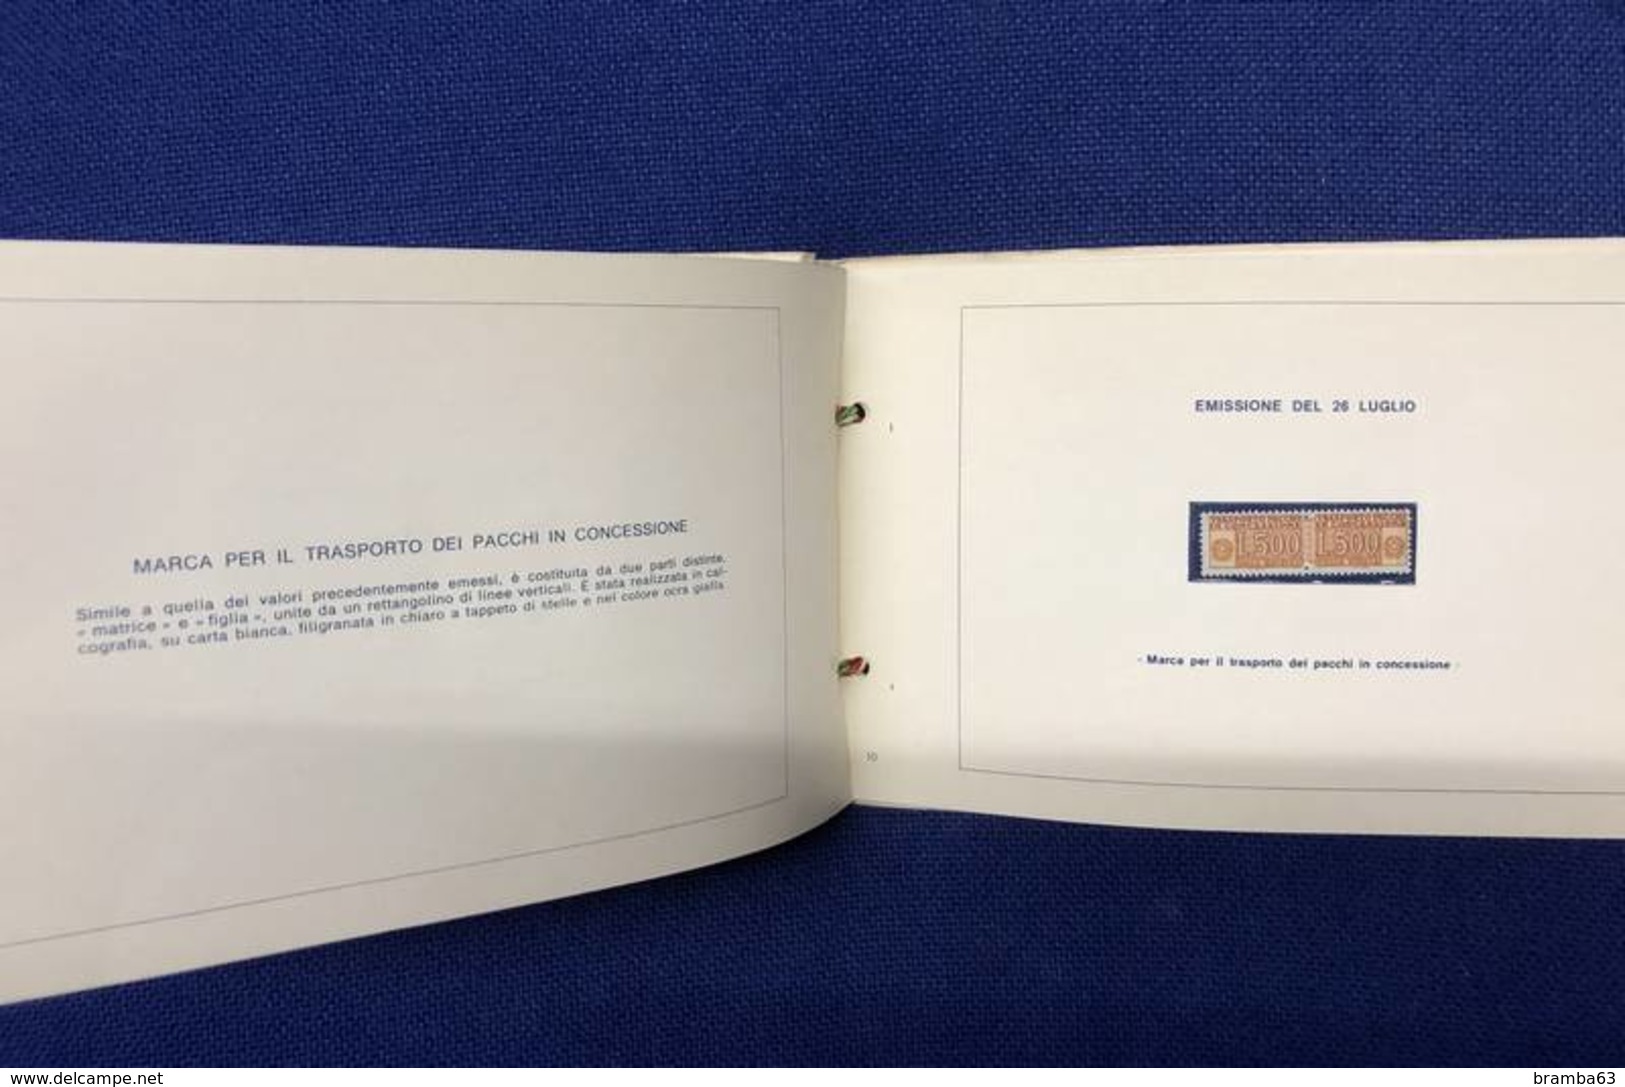 1976 Libretto francobolli emessi amministrazione postale italiana - completo nuovo (come da scansione)